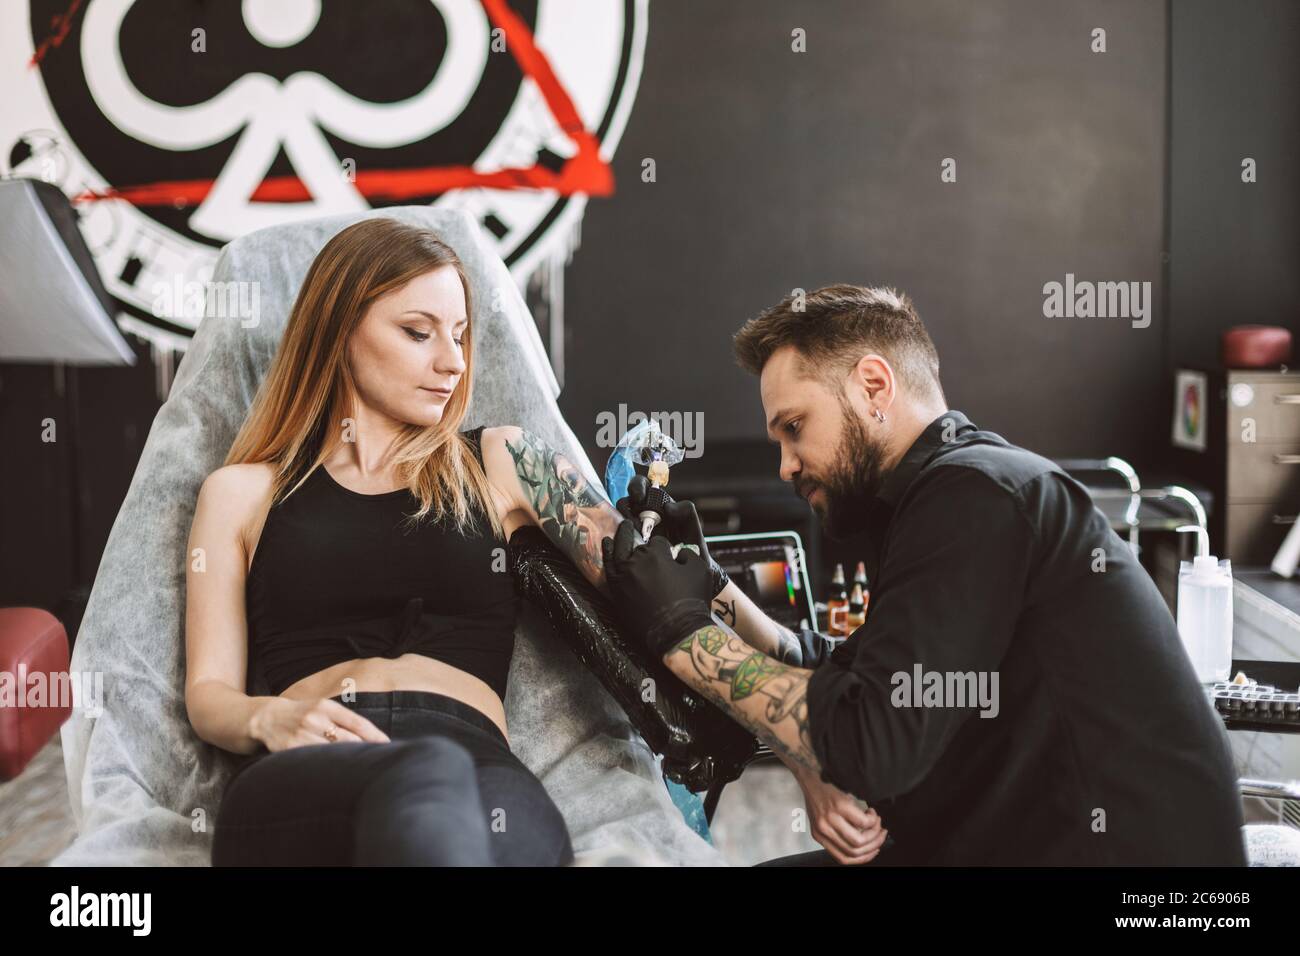 Professional tattooer doing tattoo on girl hand using tattoo machine in modern studio Stock Photo